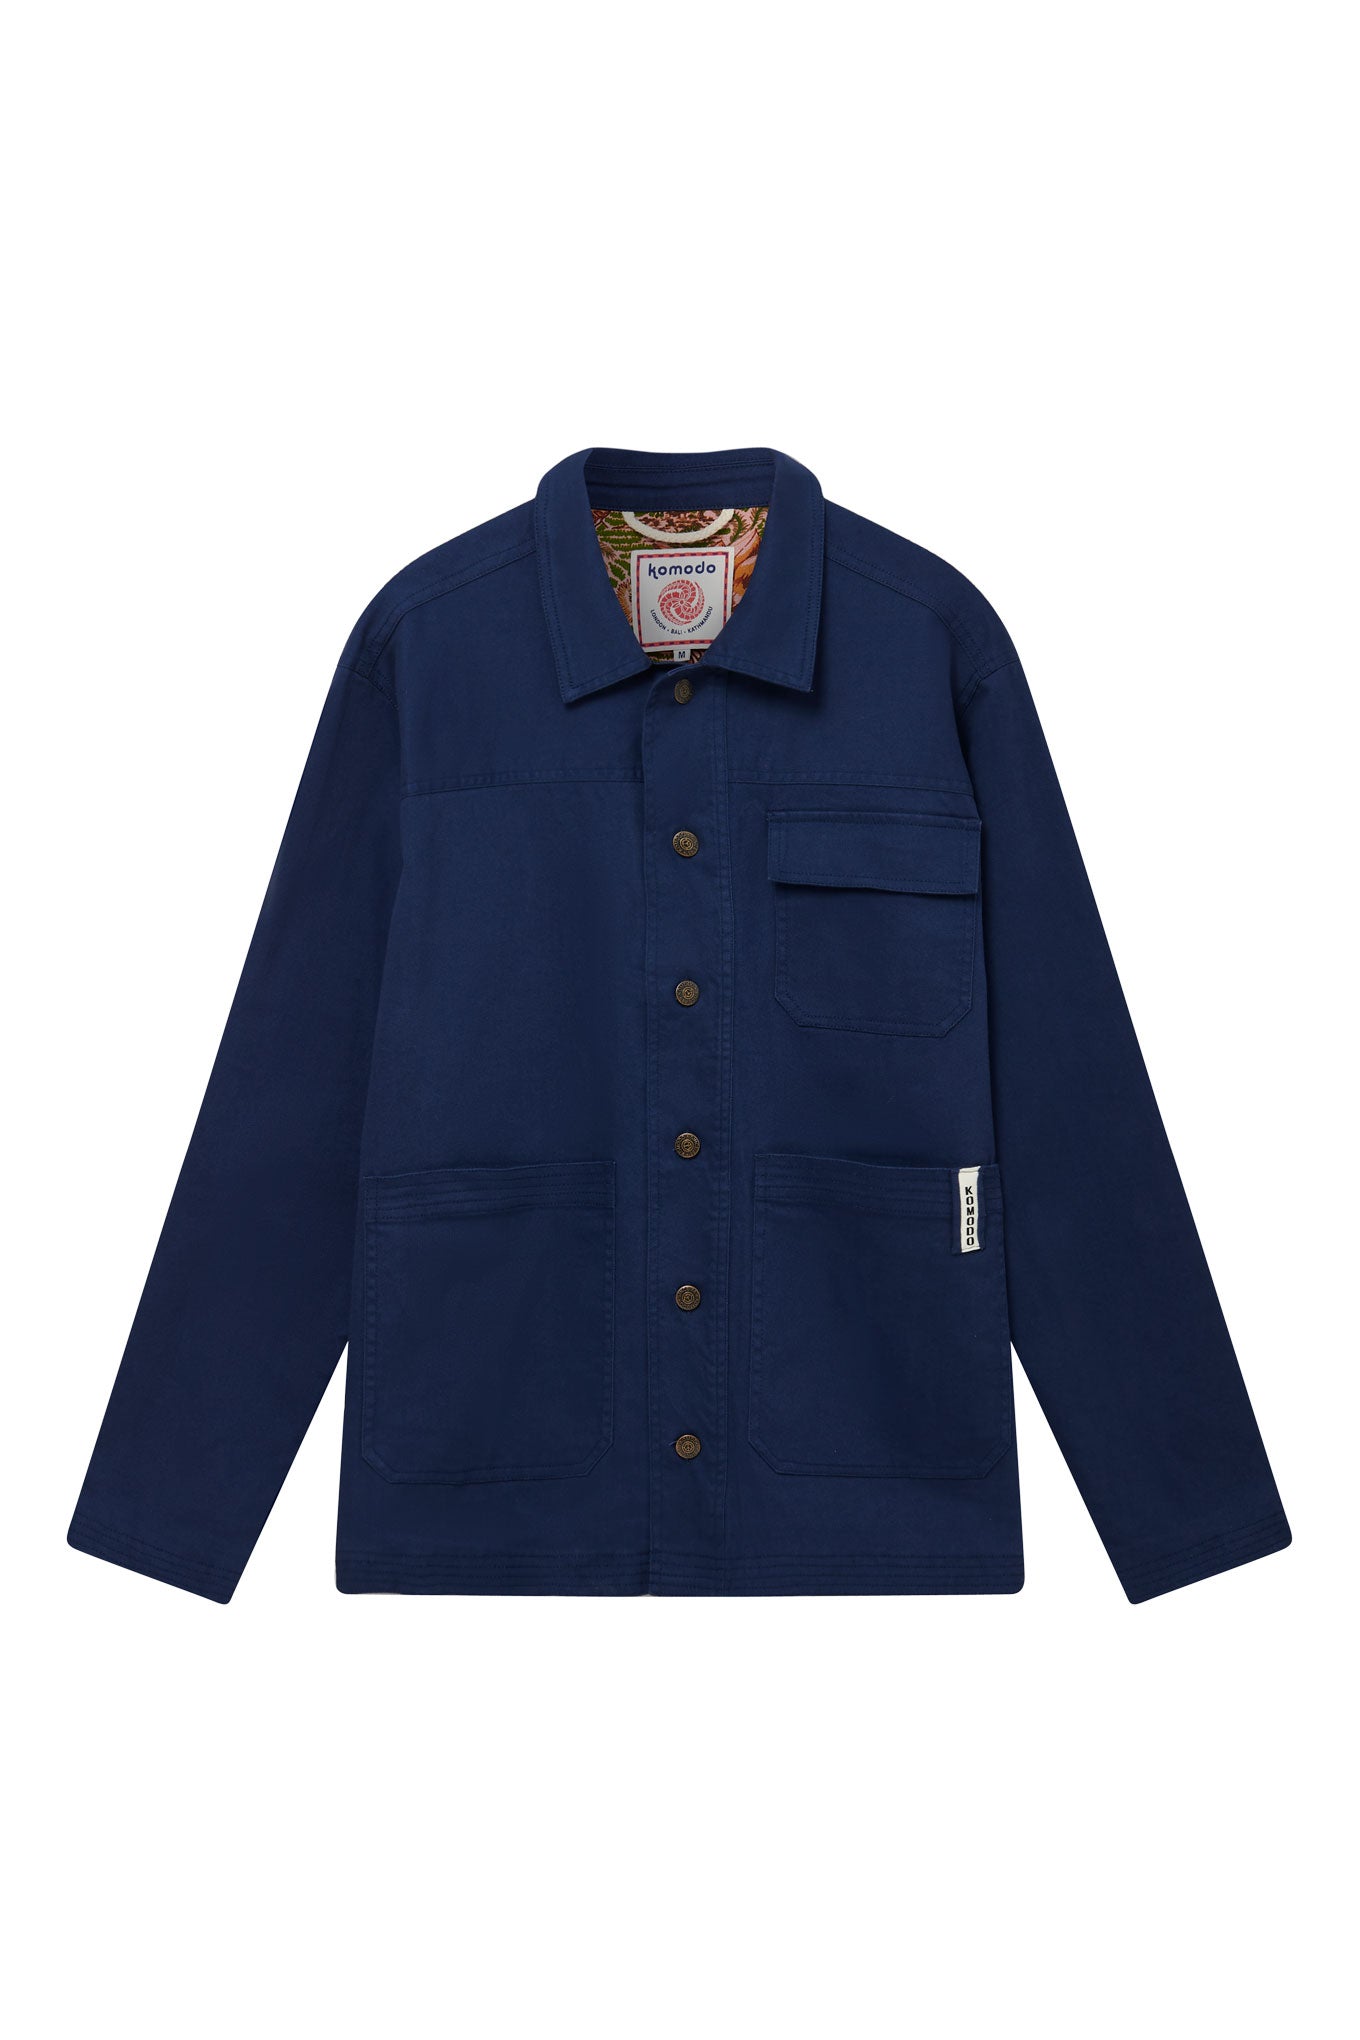 Komodo Men's Blue Landon - Organic Cotton Jacket Navy